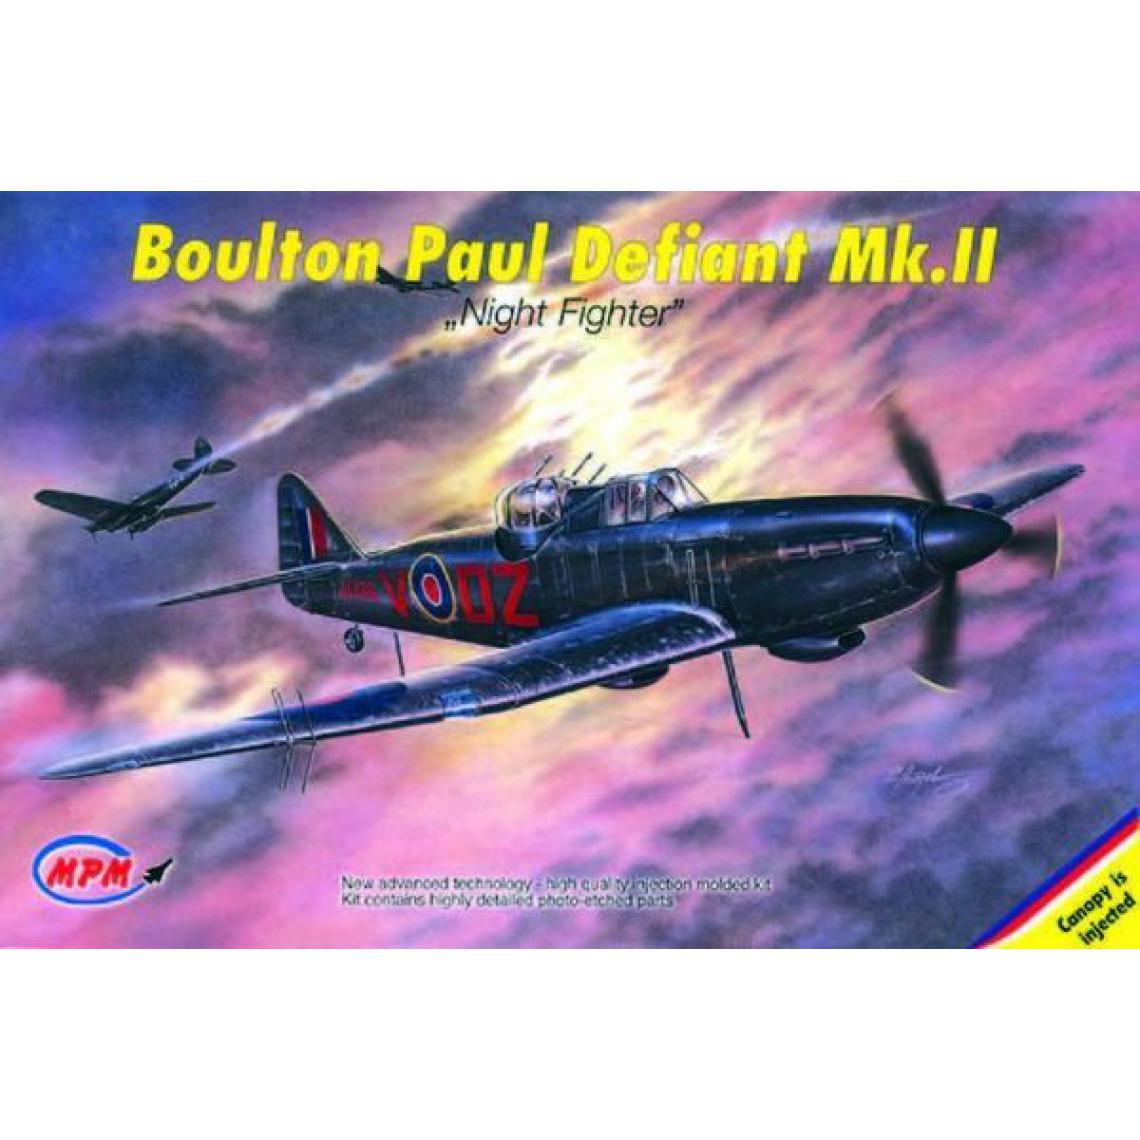 Mpm - Boulton Paul Defiant Mk. II Night Fighter- 1:72e - MPM - Accessoires et pièces